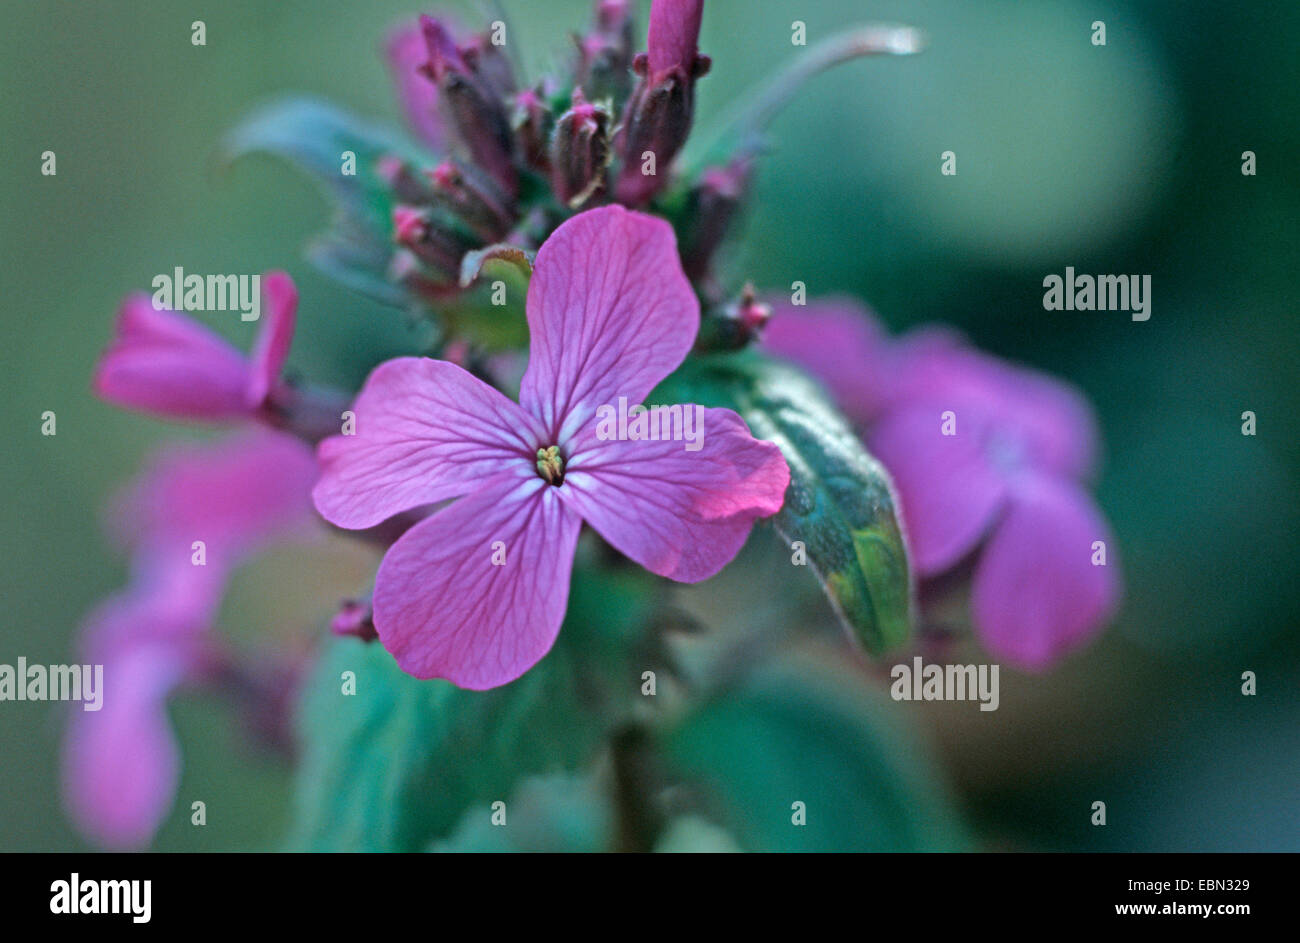 honesty plant (Lunaria annua), flowers Stock Photo